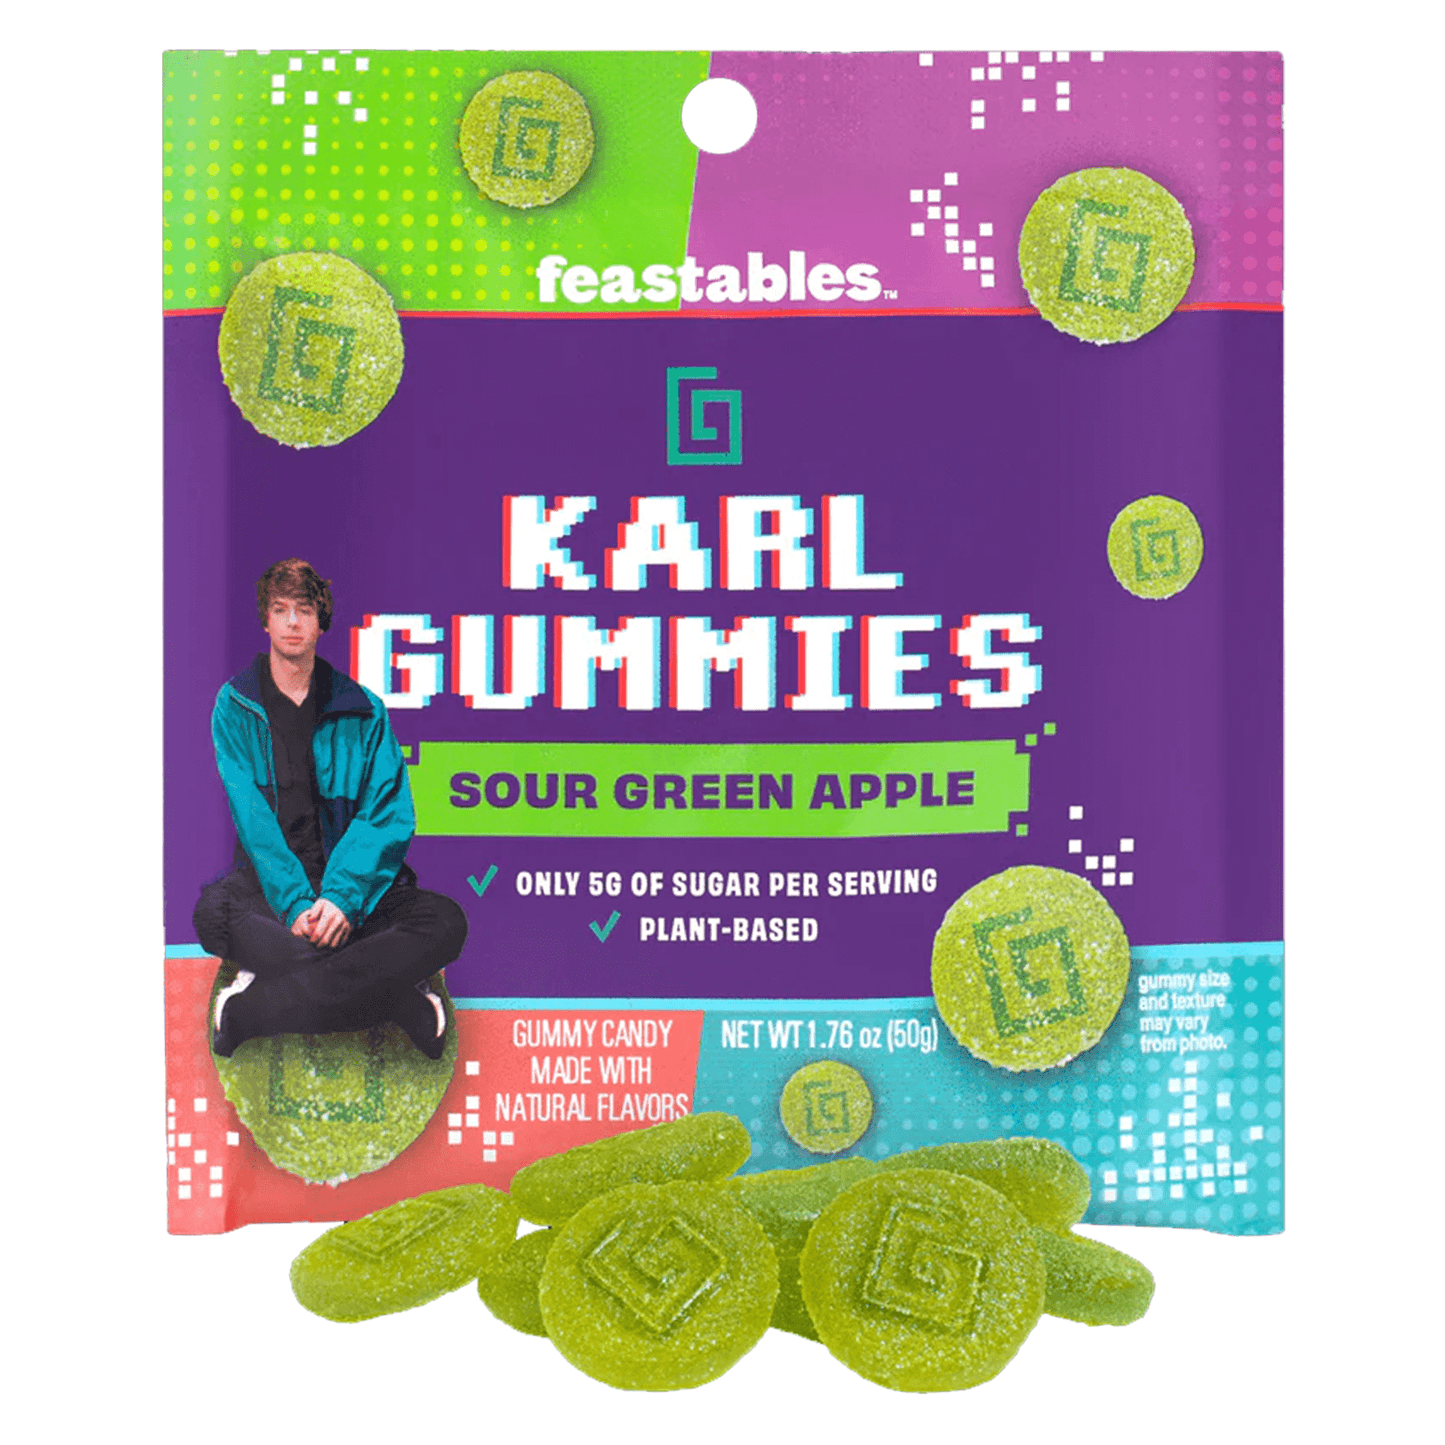 Feastables MrBeast Karl Gummies